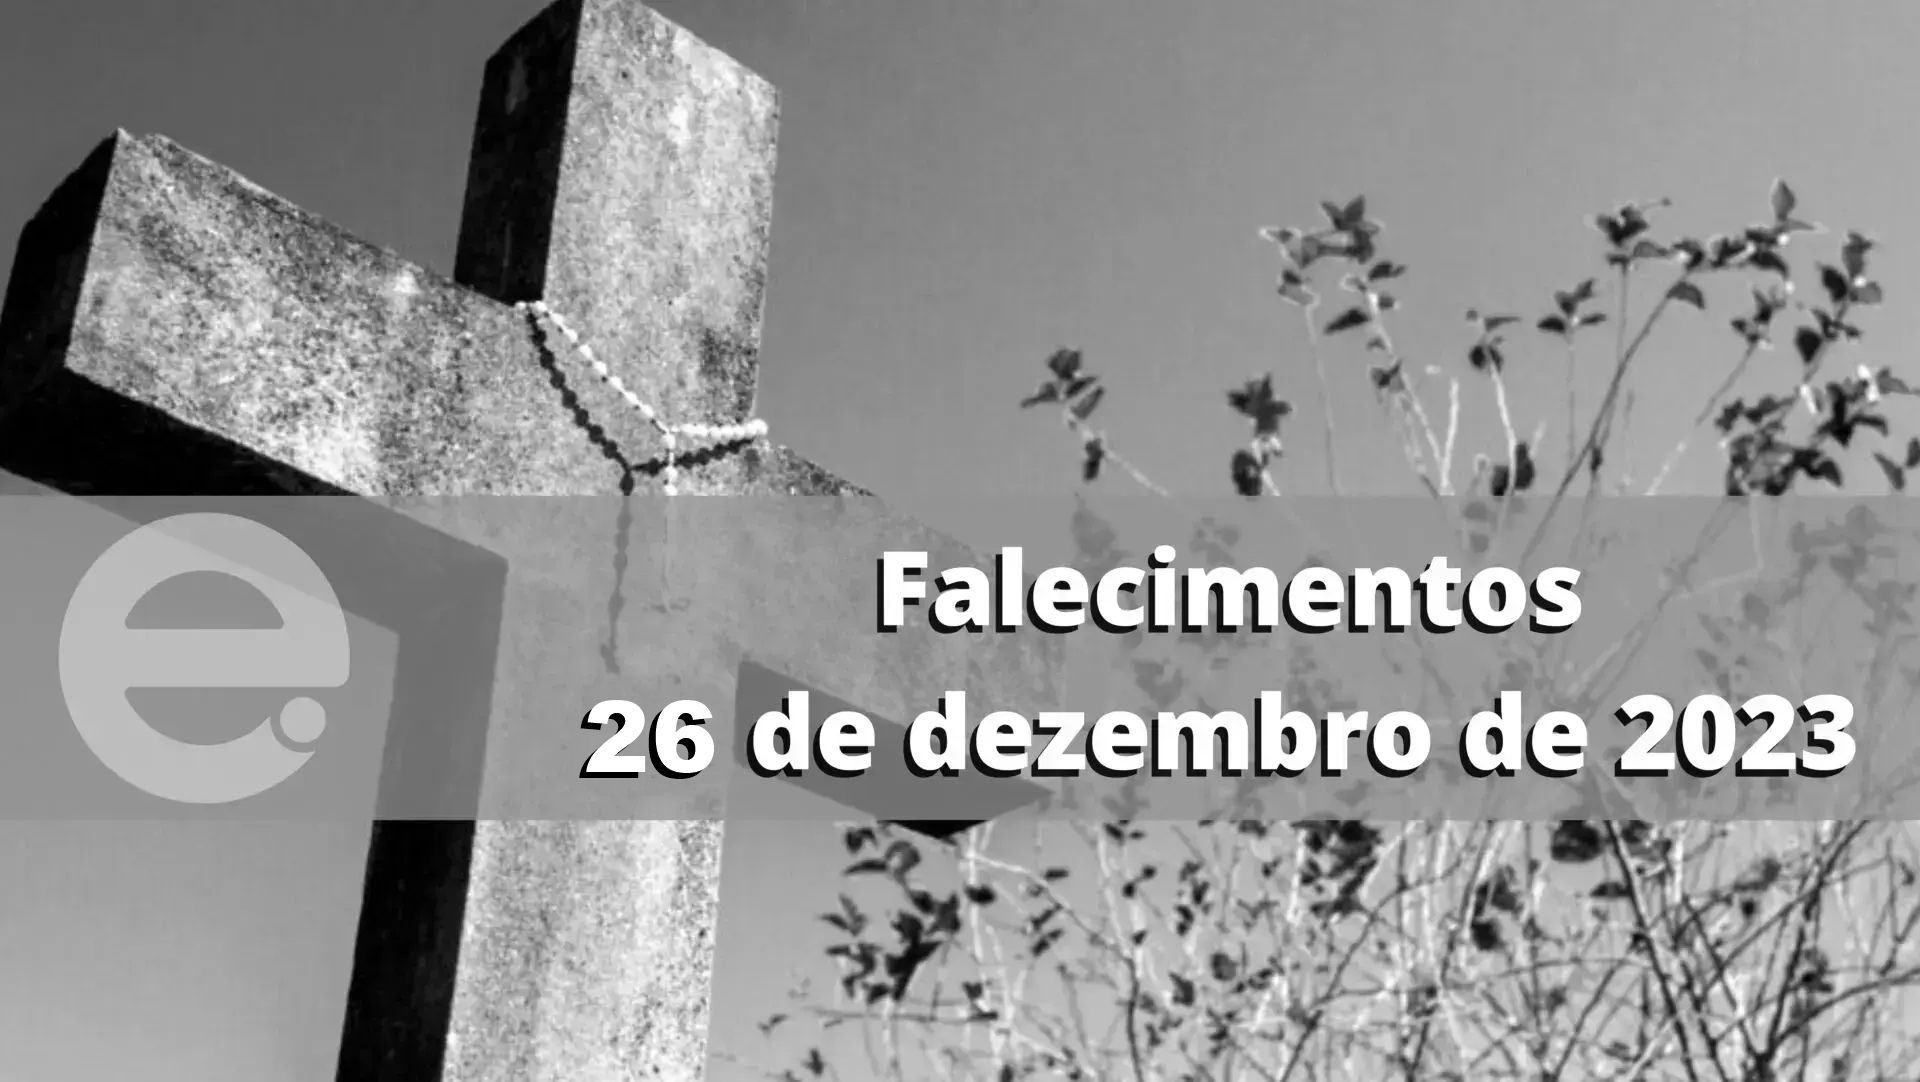 Confira os falecimentos desta terça-feira, 26 de dezembro de 2023, em Limeira